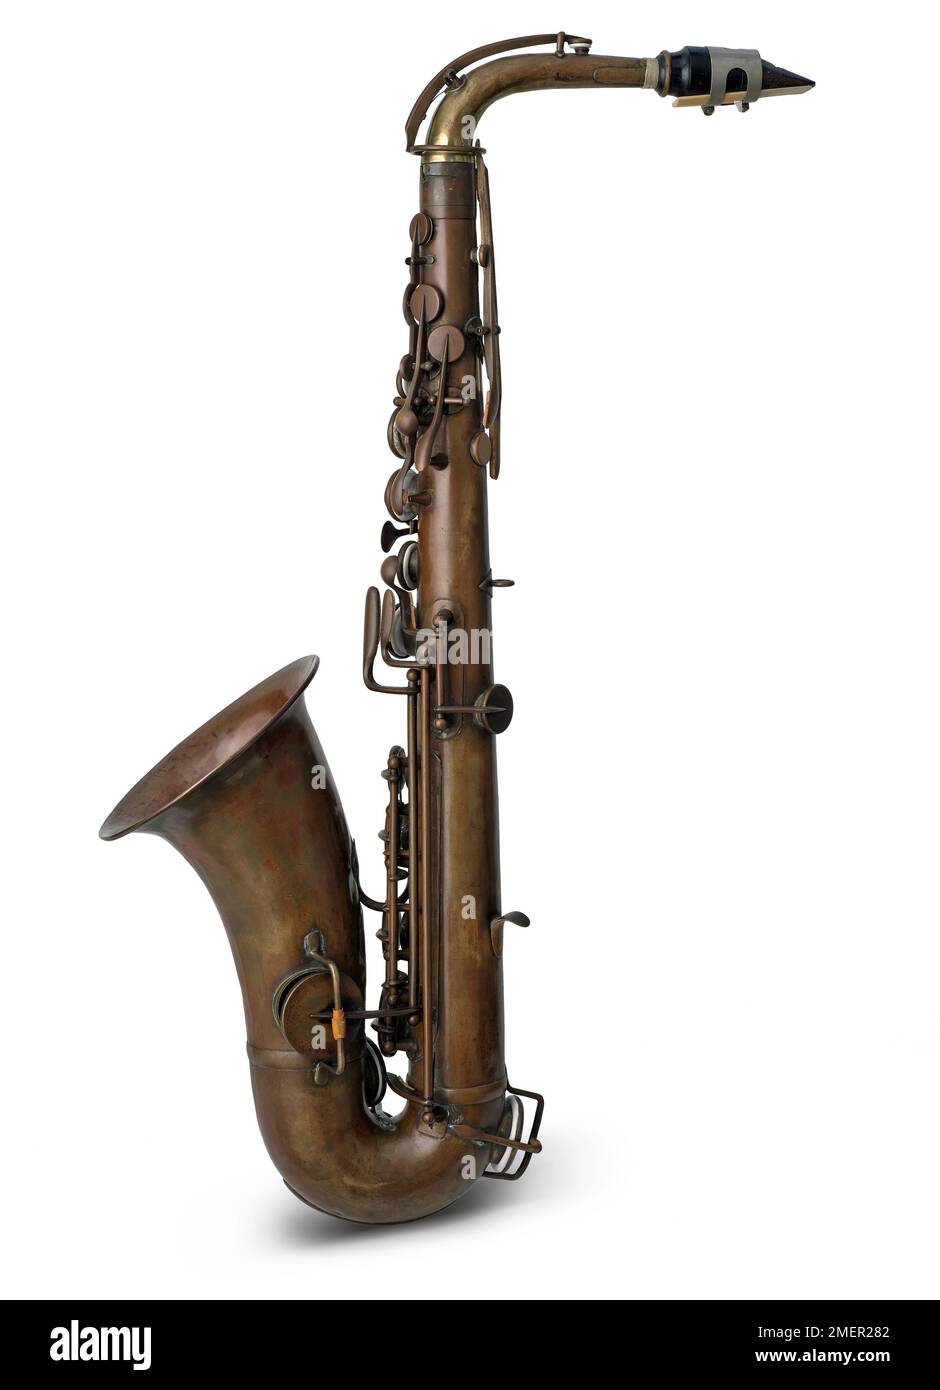 e saxophone alto plat, réalisé par Adolphe Sax, Paris, France, 1859 Banque D'Images